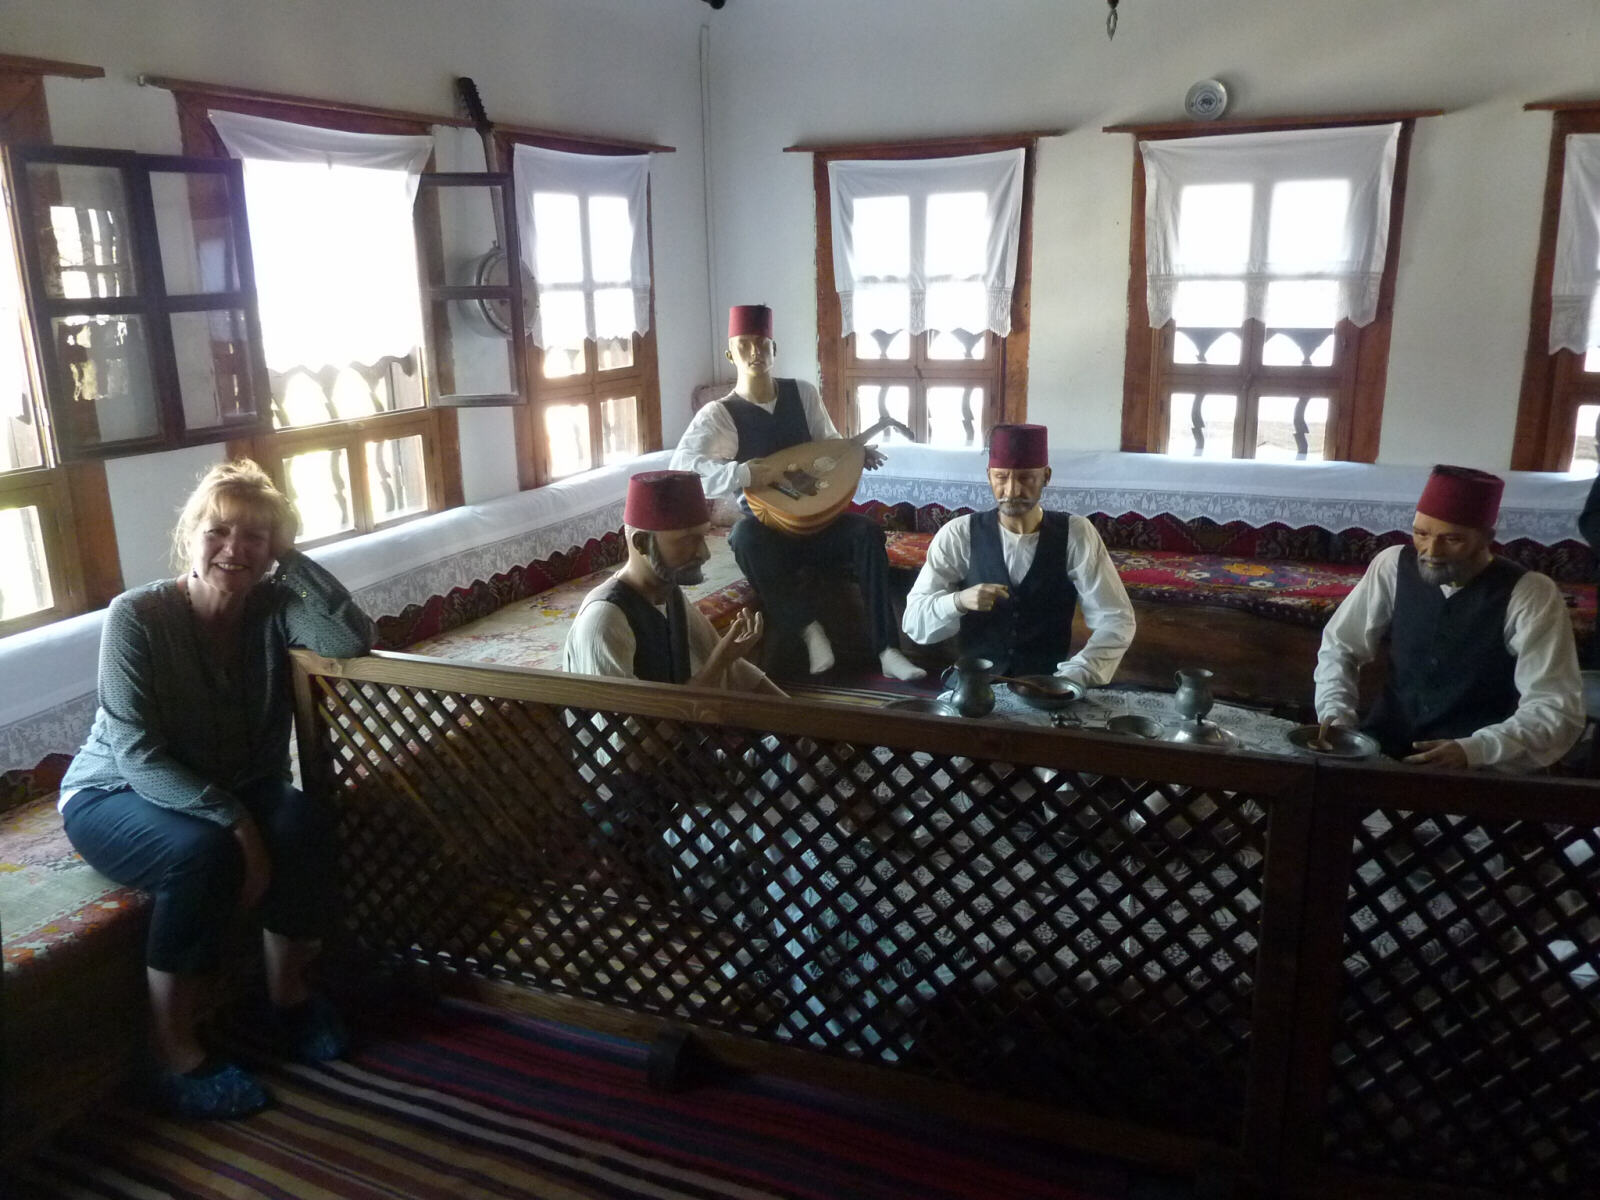 Inside Kaymakamlar house museum in Safranbolu, Turkey